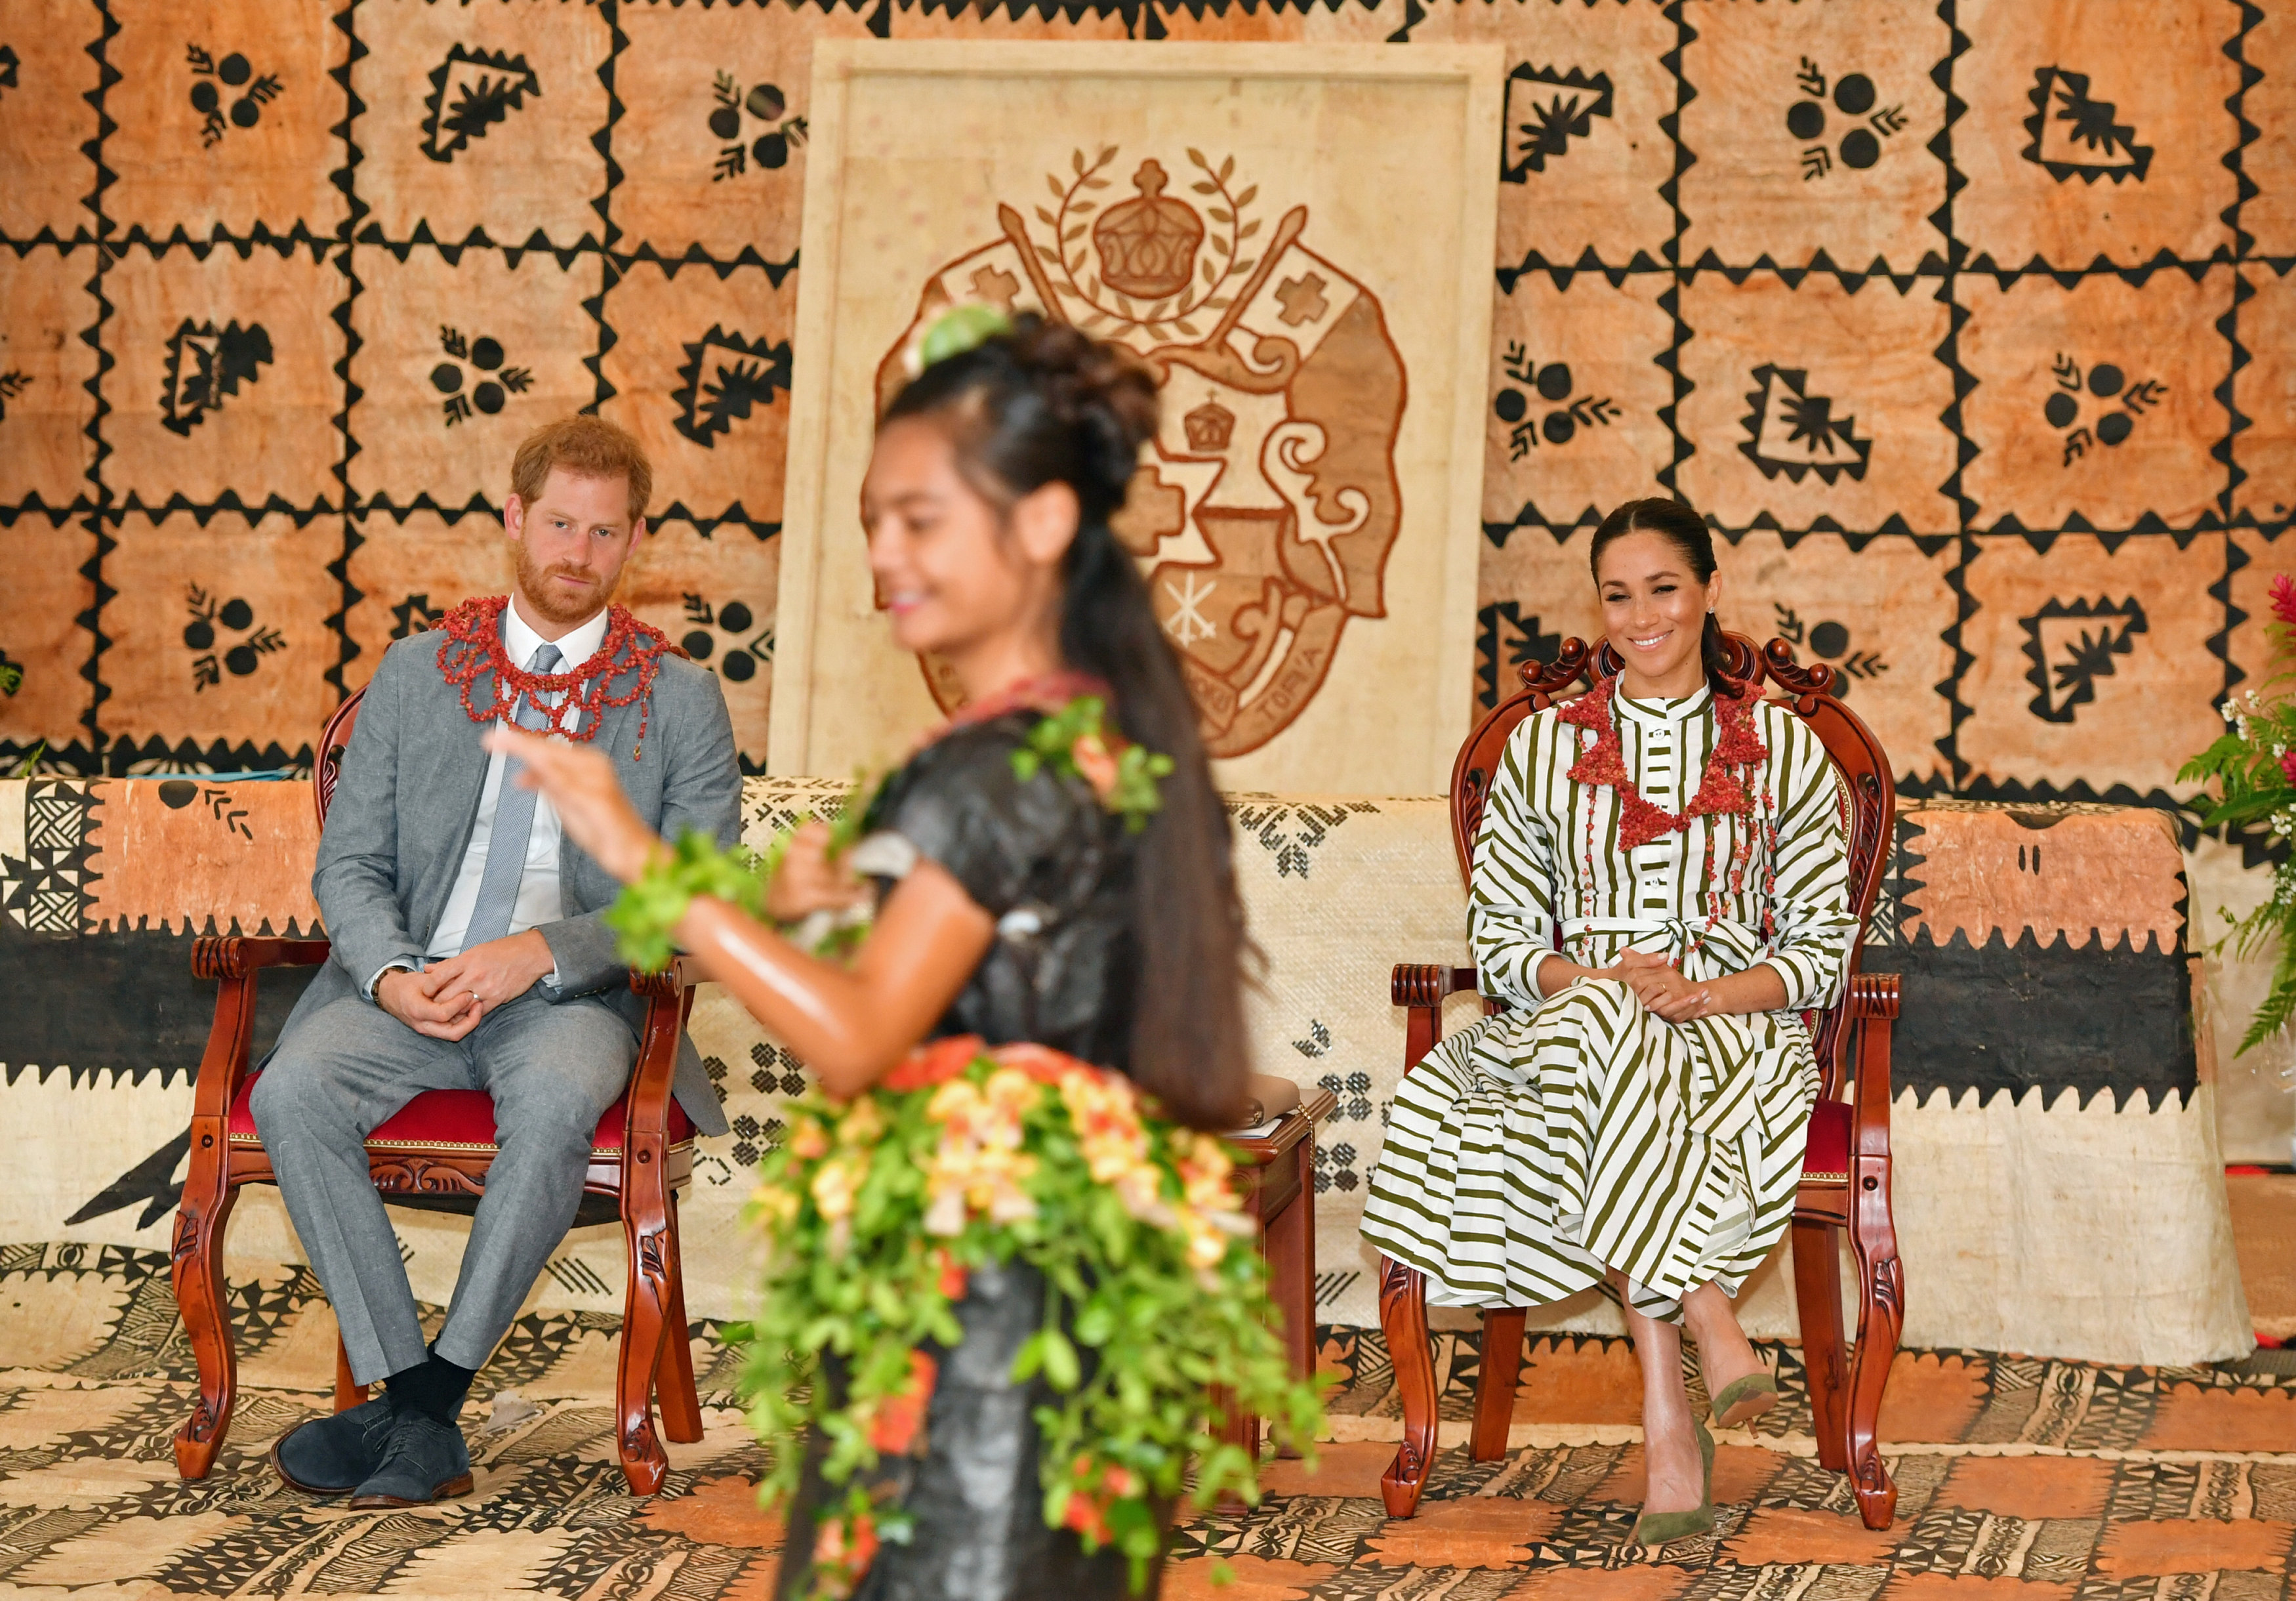 El príncipe Harry y Meghan se visten con la falda tradicional de las islas de Tonga (Fotos)